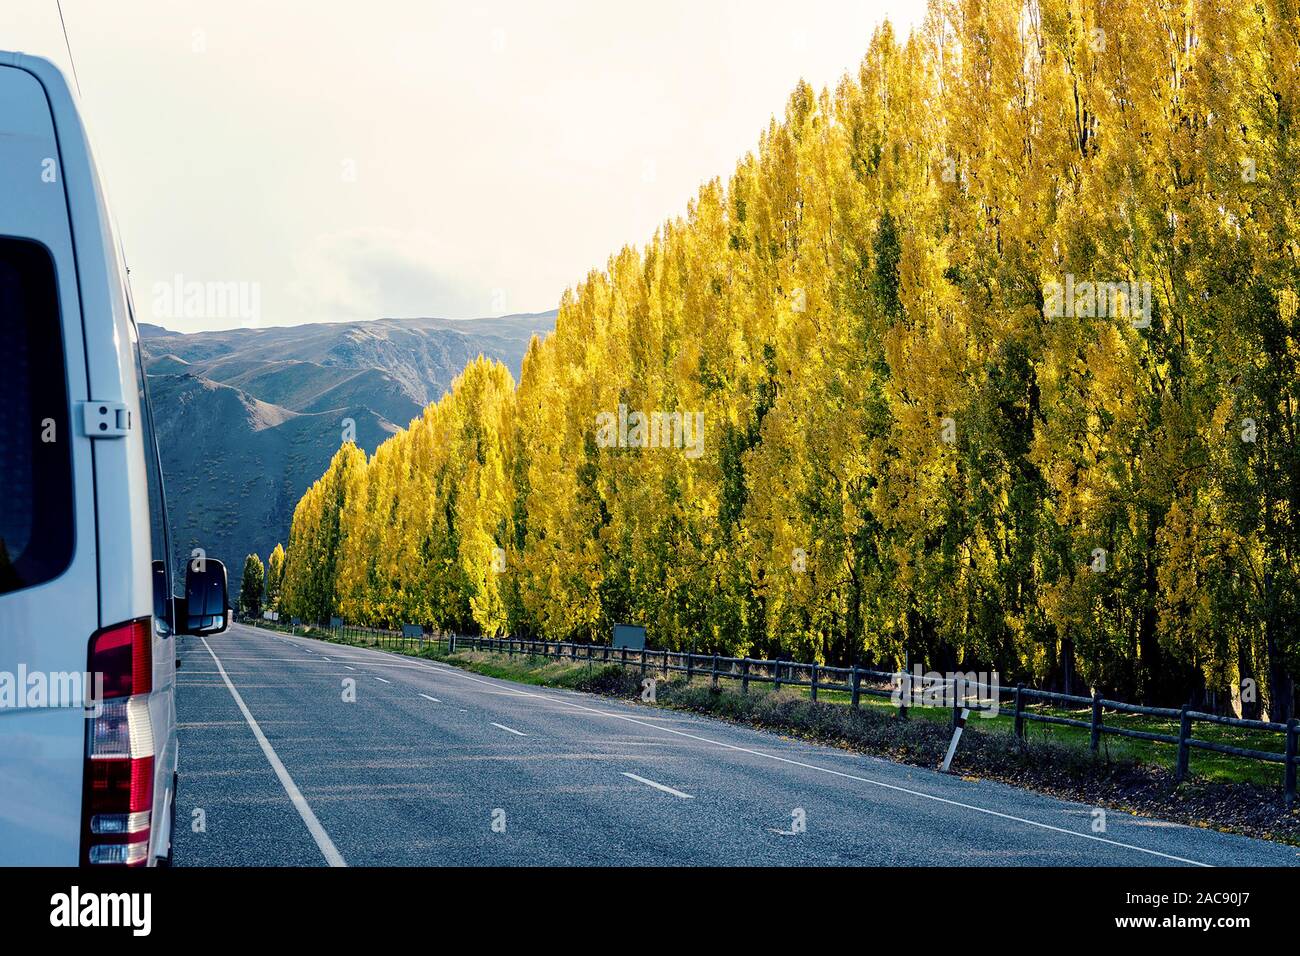 Un furgone parcheggiato a fianco di un'autostrada foderato con il giallo oro sugli alberi di pioppo con fogliame di autunno Foto Stock